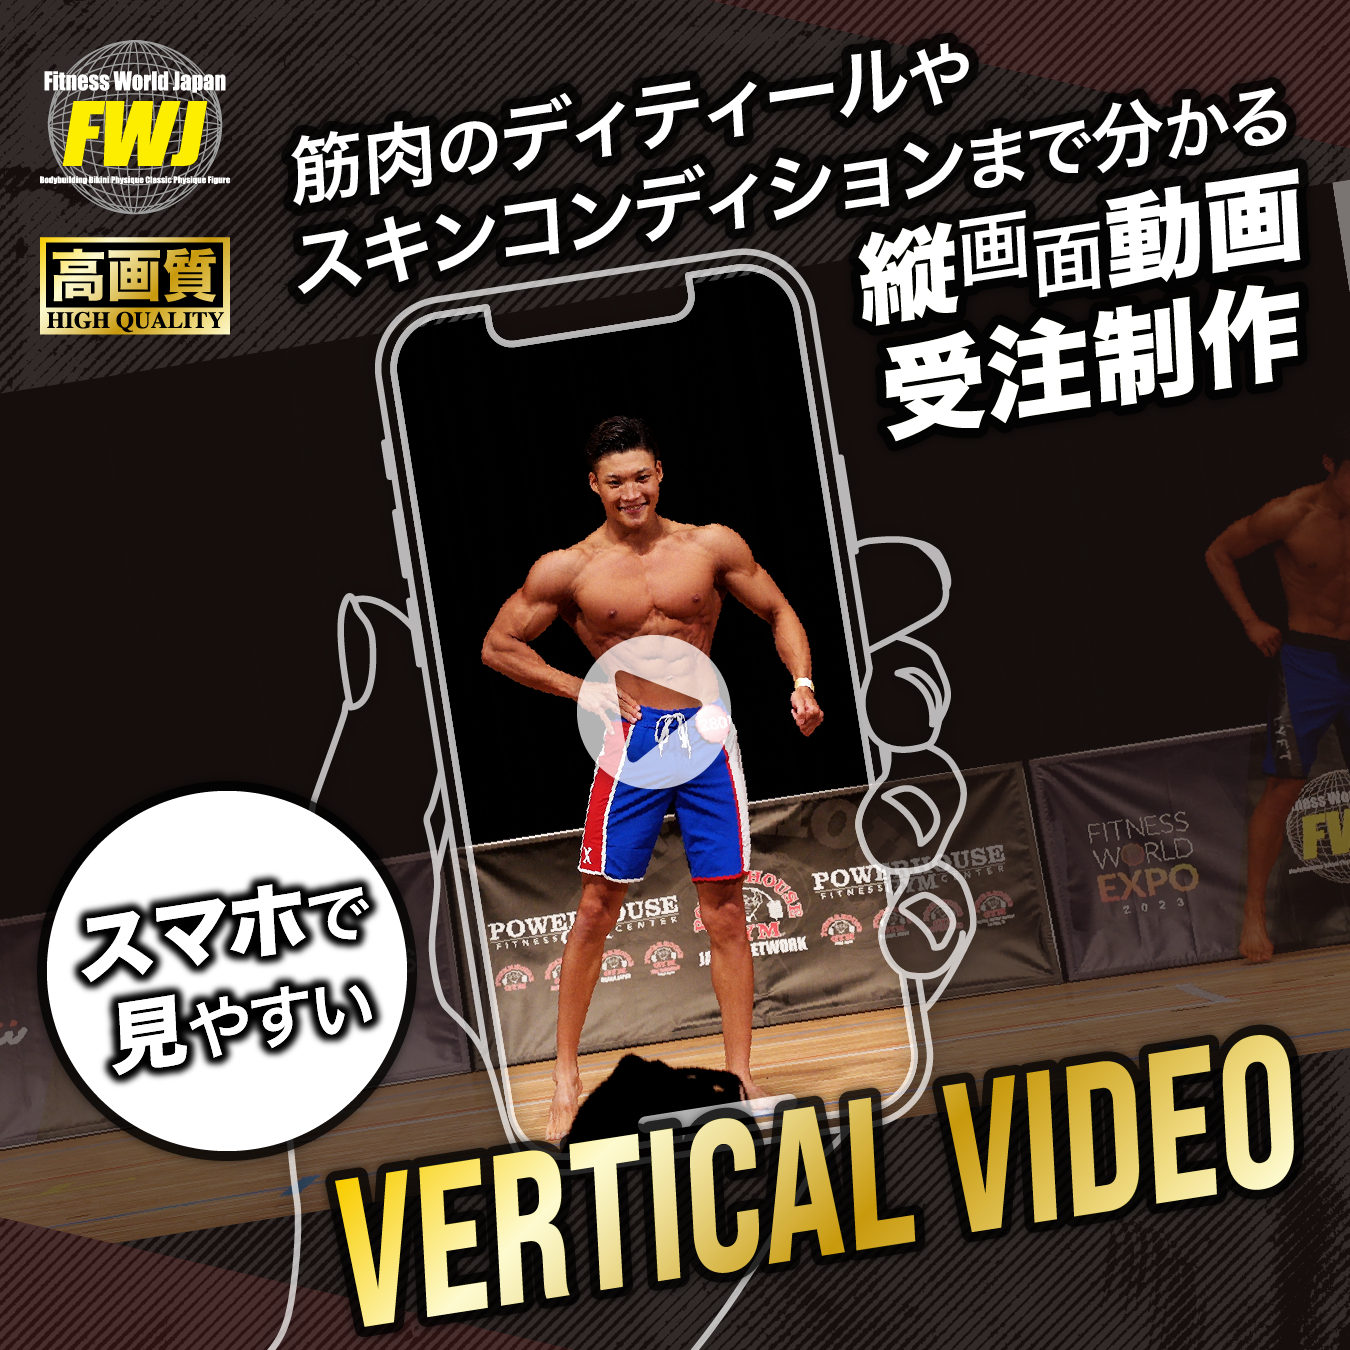 FWJ Vertical video order sales FWJ縦型動画販売